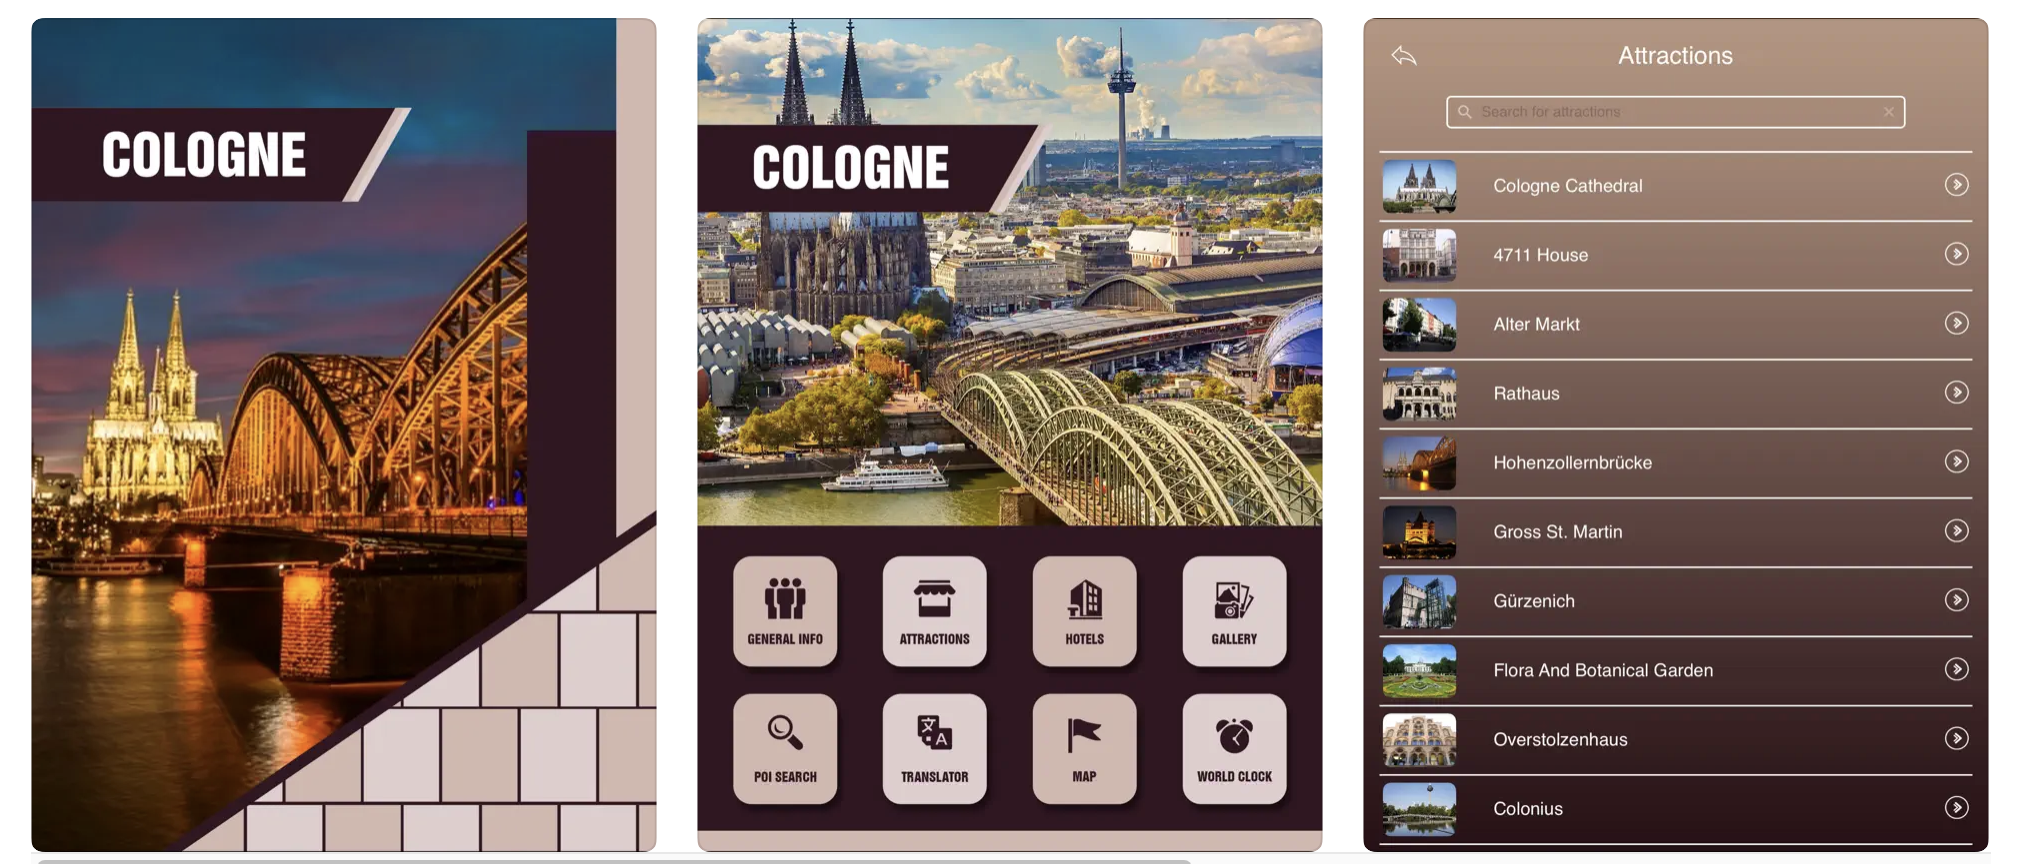 Cologne Tourist Guide Image